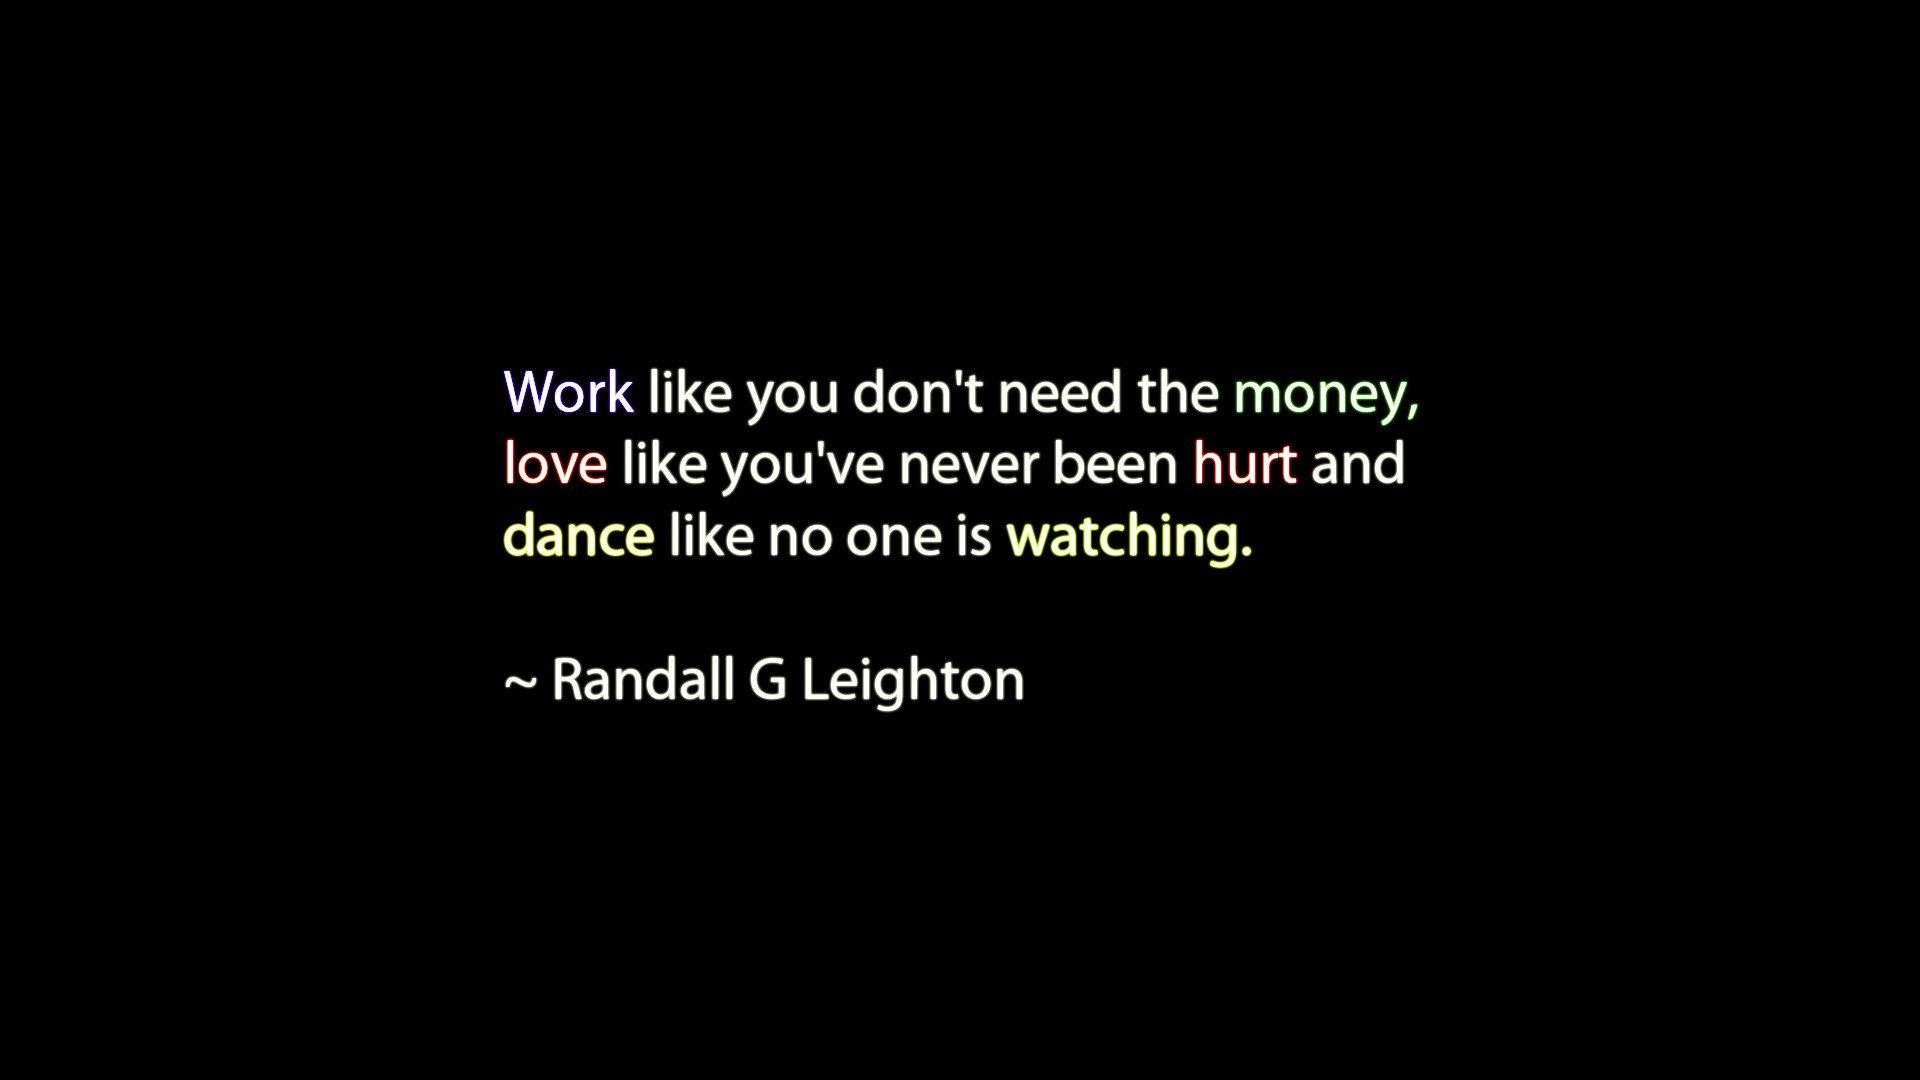 Work Love Money Quotes Dance Hurt Wallpaper